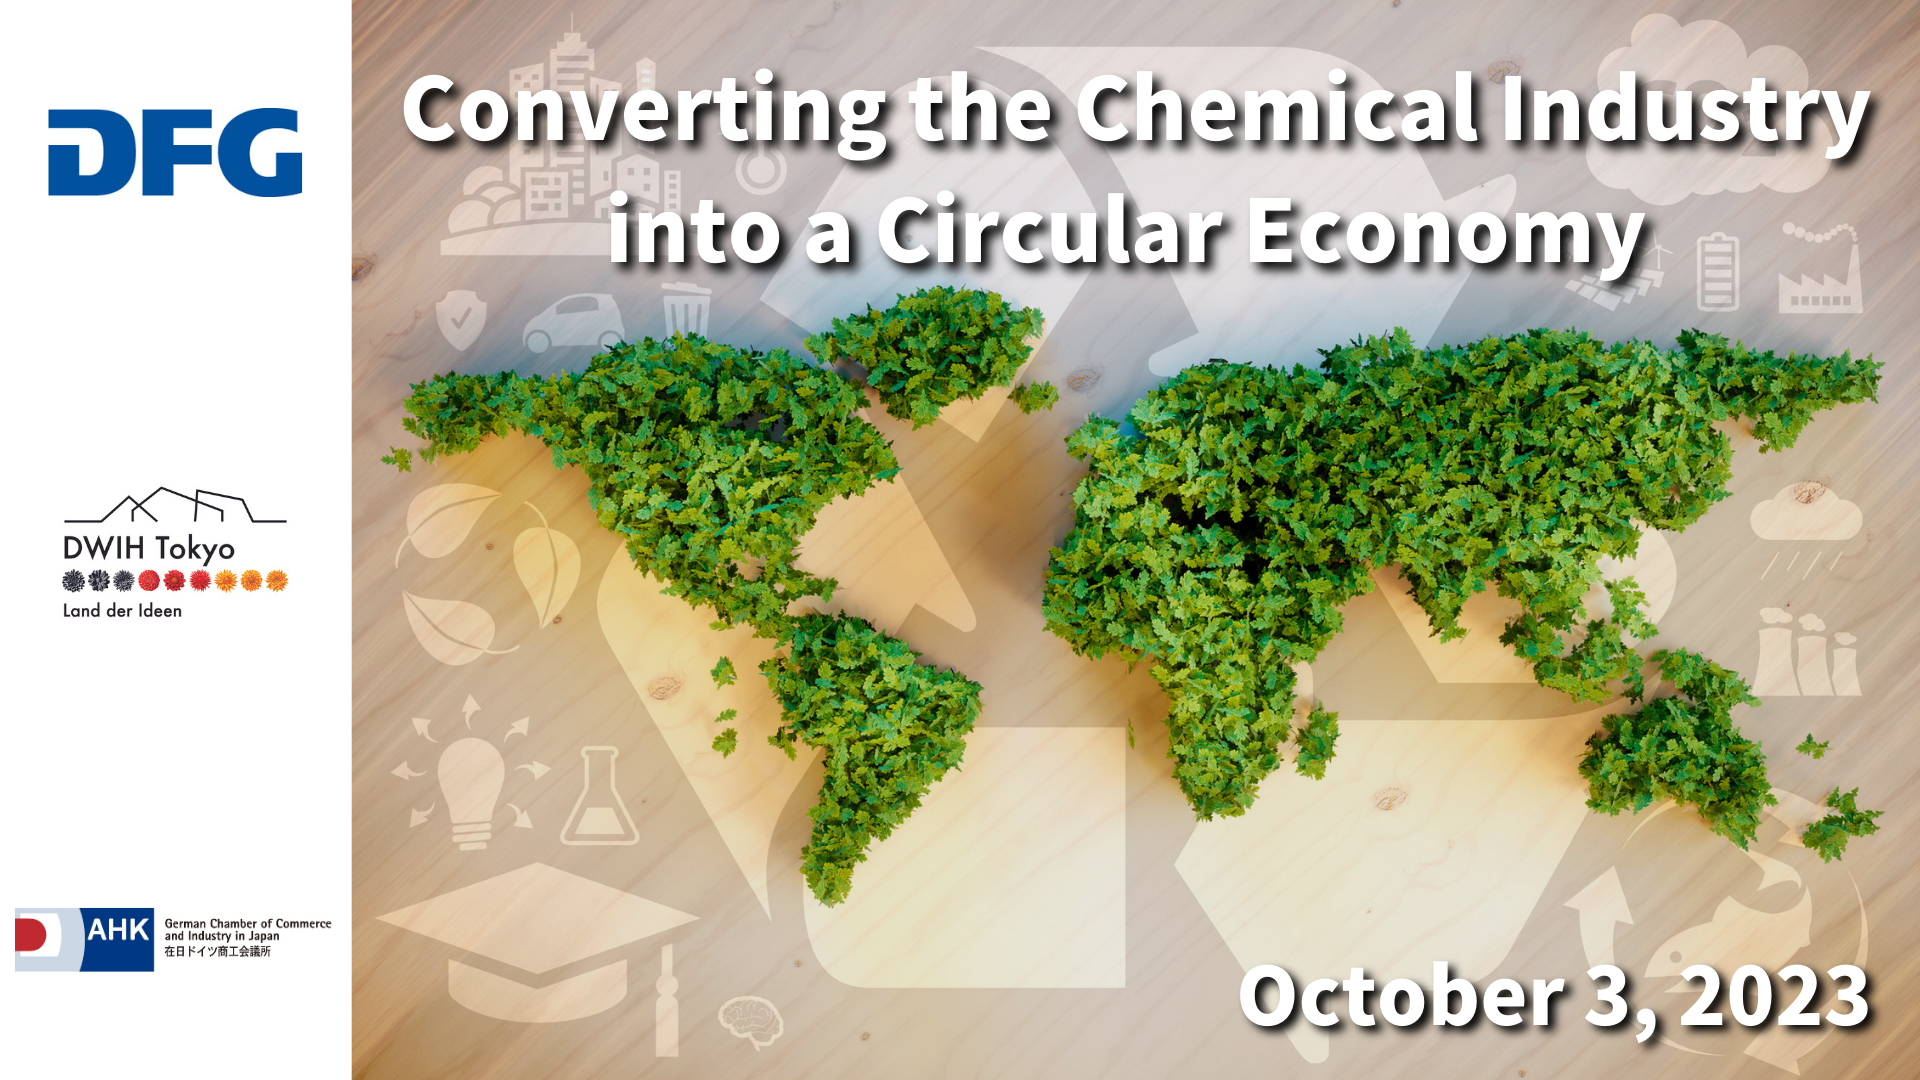 化学産業をサーキュラー・エコノミーに転換をテーマとする緑で包まれた世界地図